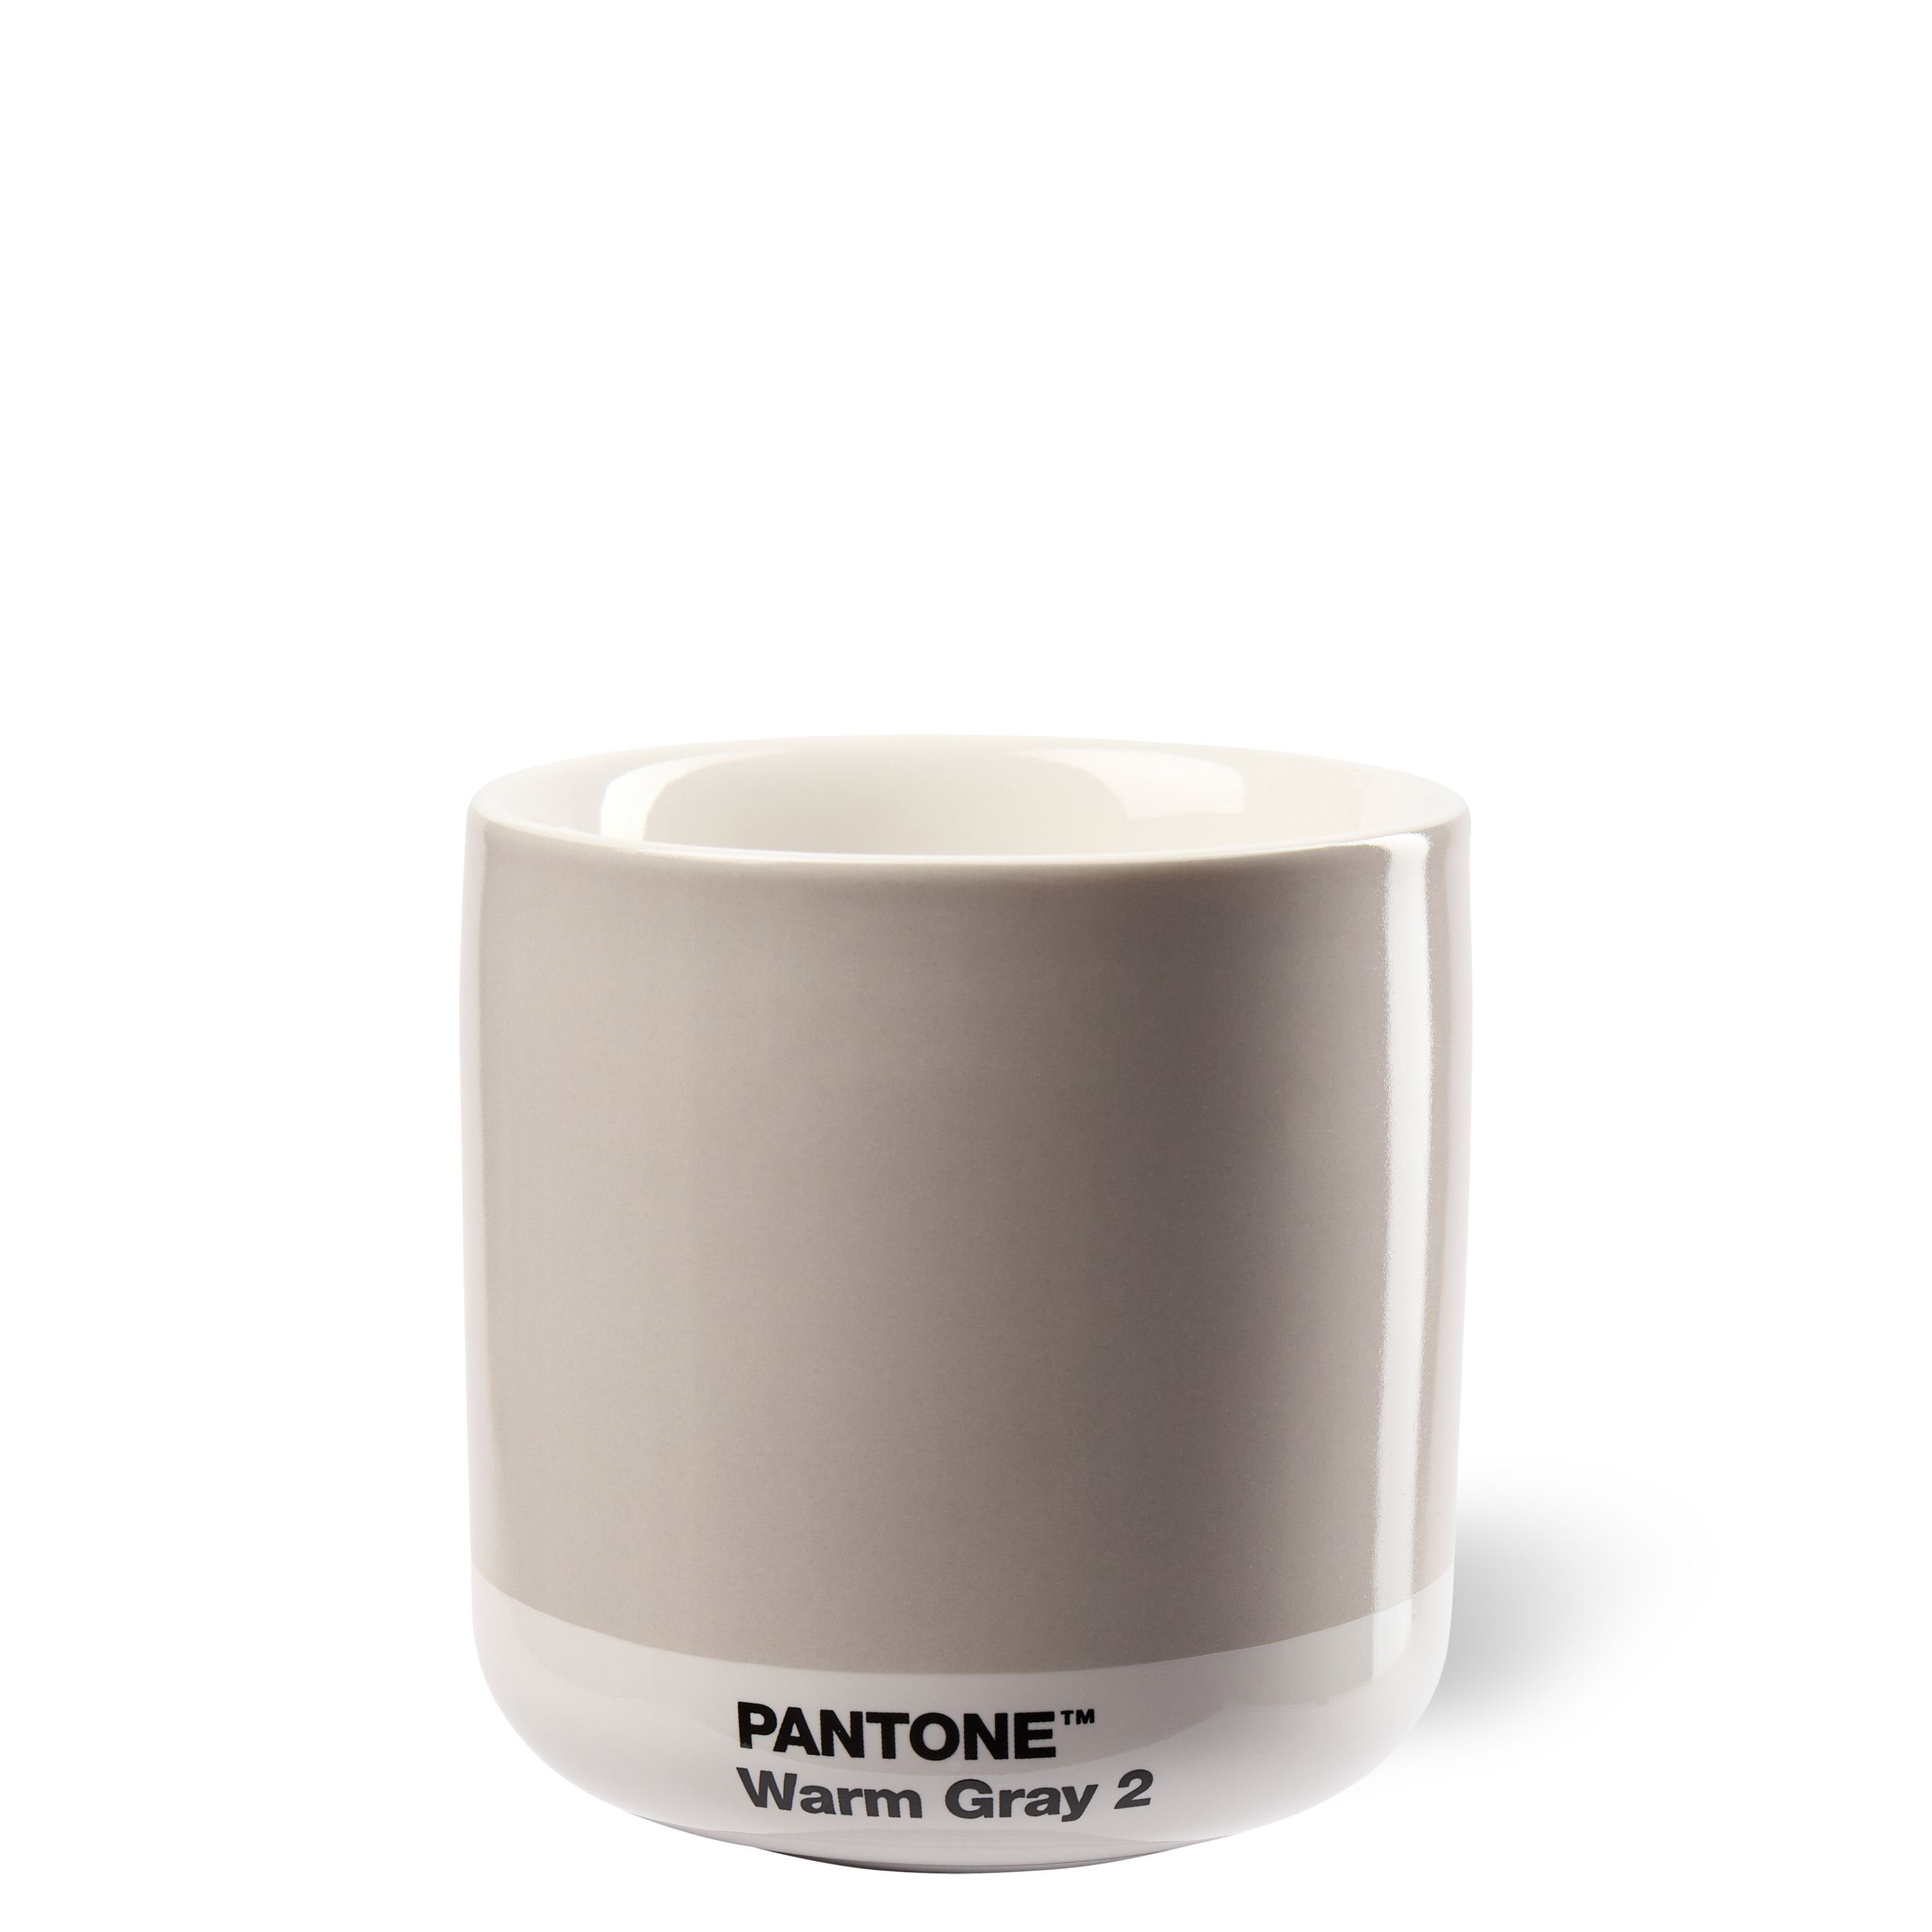 PANTONE Kaffeeservice, PANTONE Porzellan Thermobecher Latte Macchiato, 220 ml Warm Gray 2 C